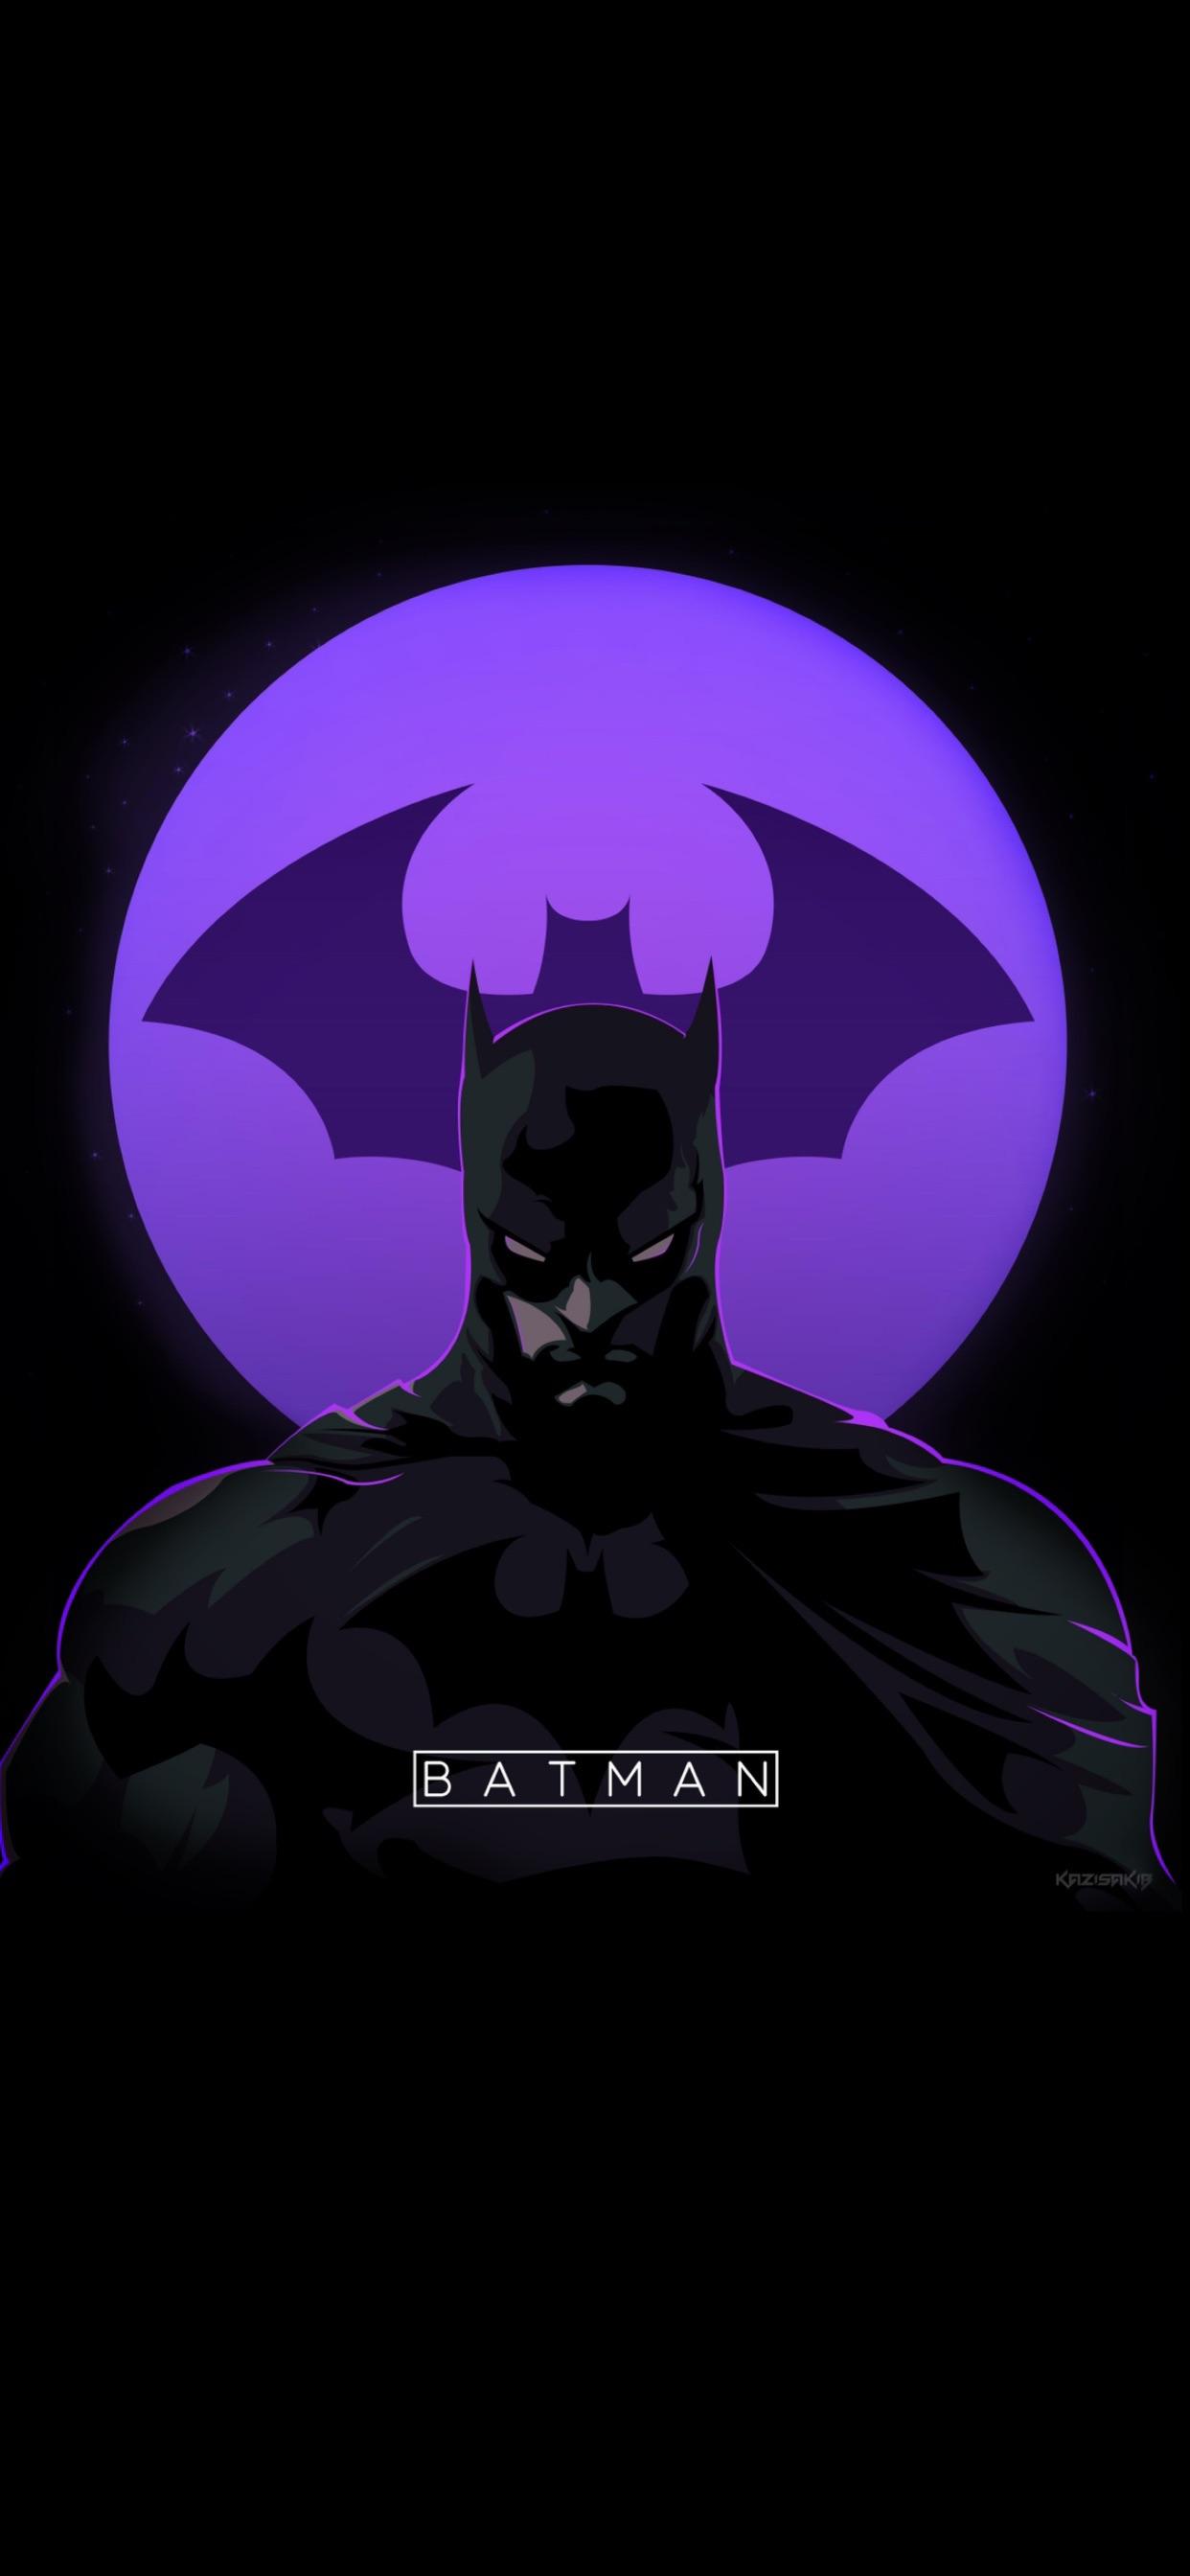 Wallpaper Of Batman